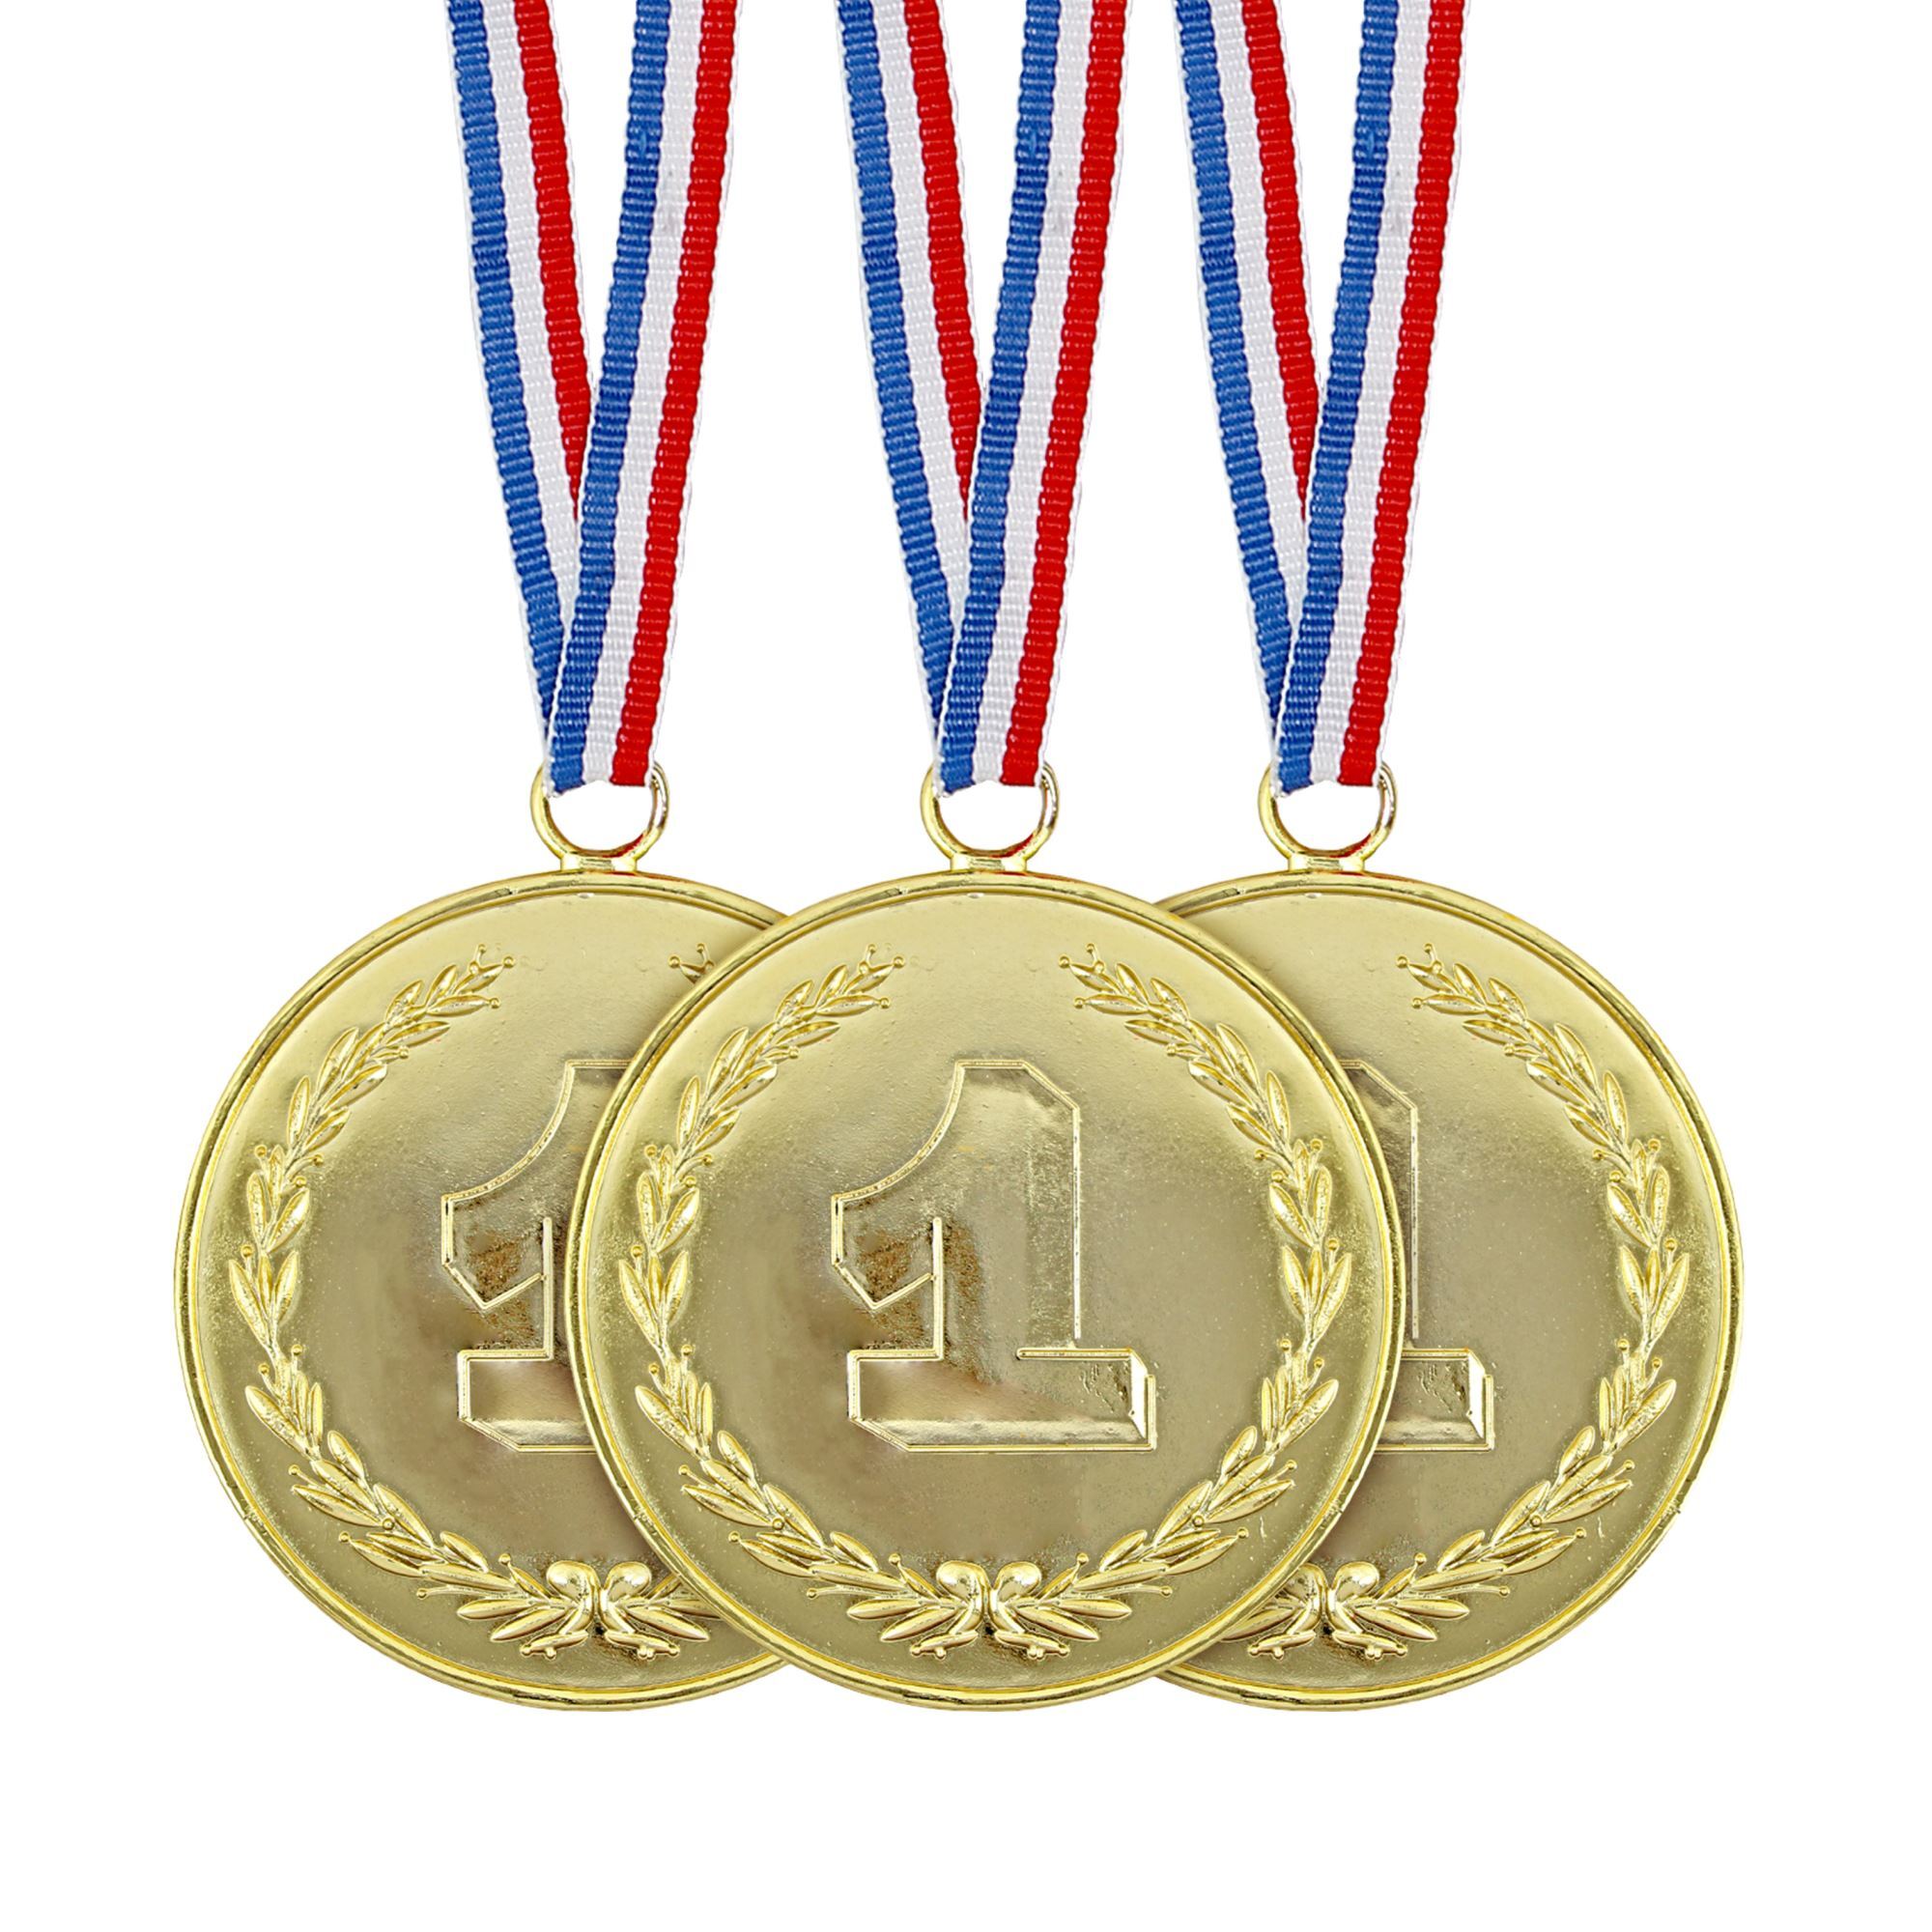 Medailles set 3 stuks nep goud plastic voor een echte kampioen 